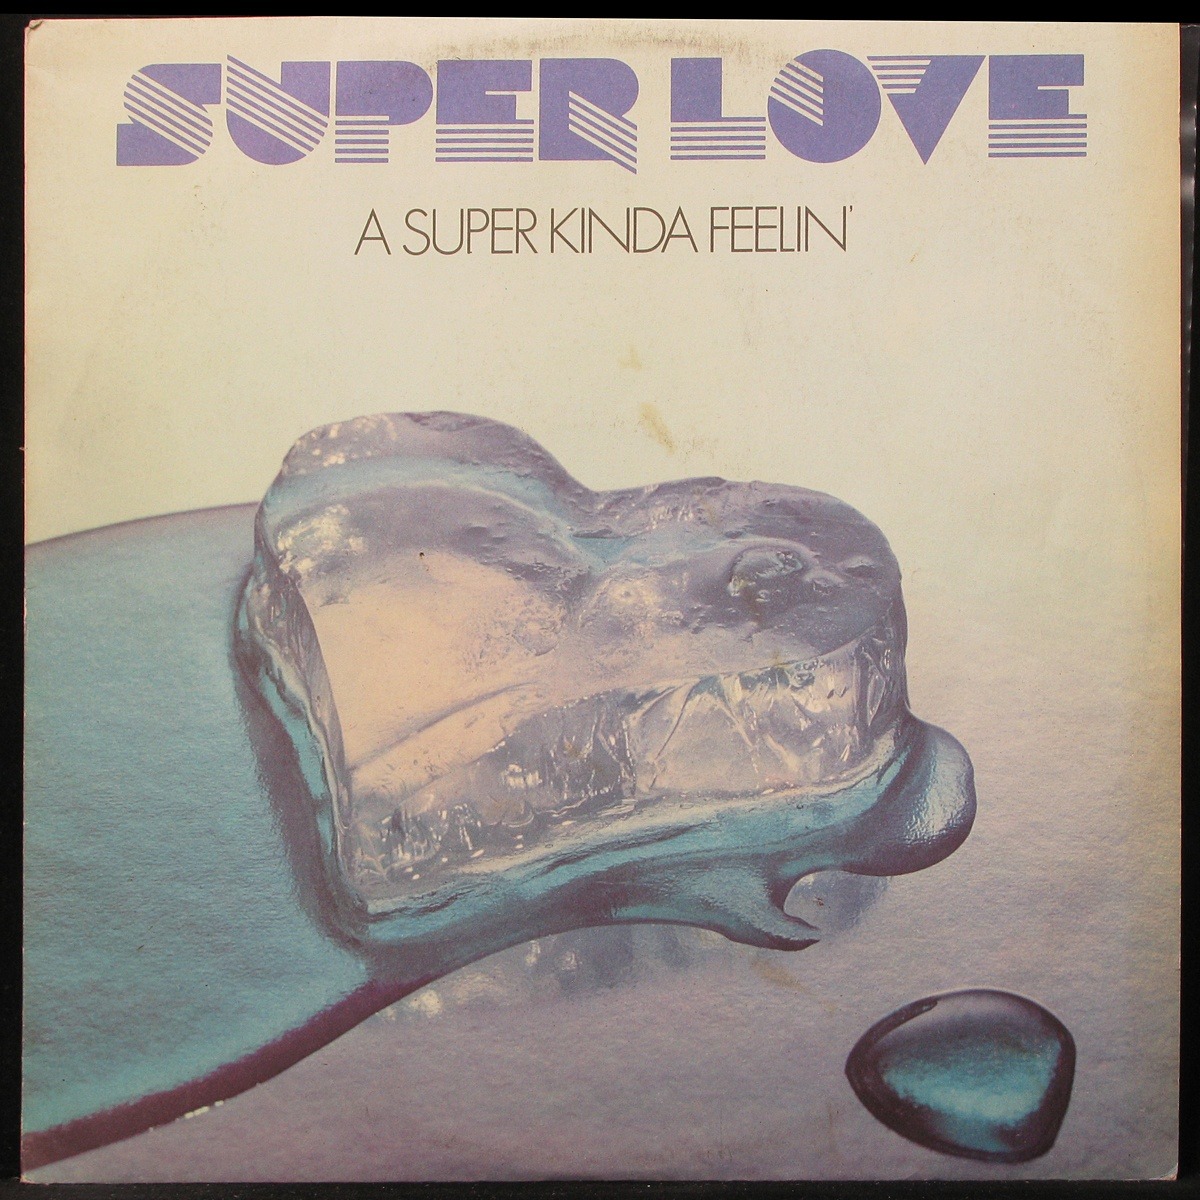 LP Super Love — Super Kinda Feelin' фото